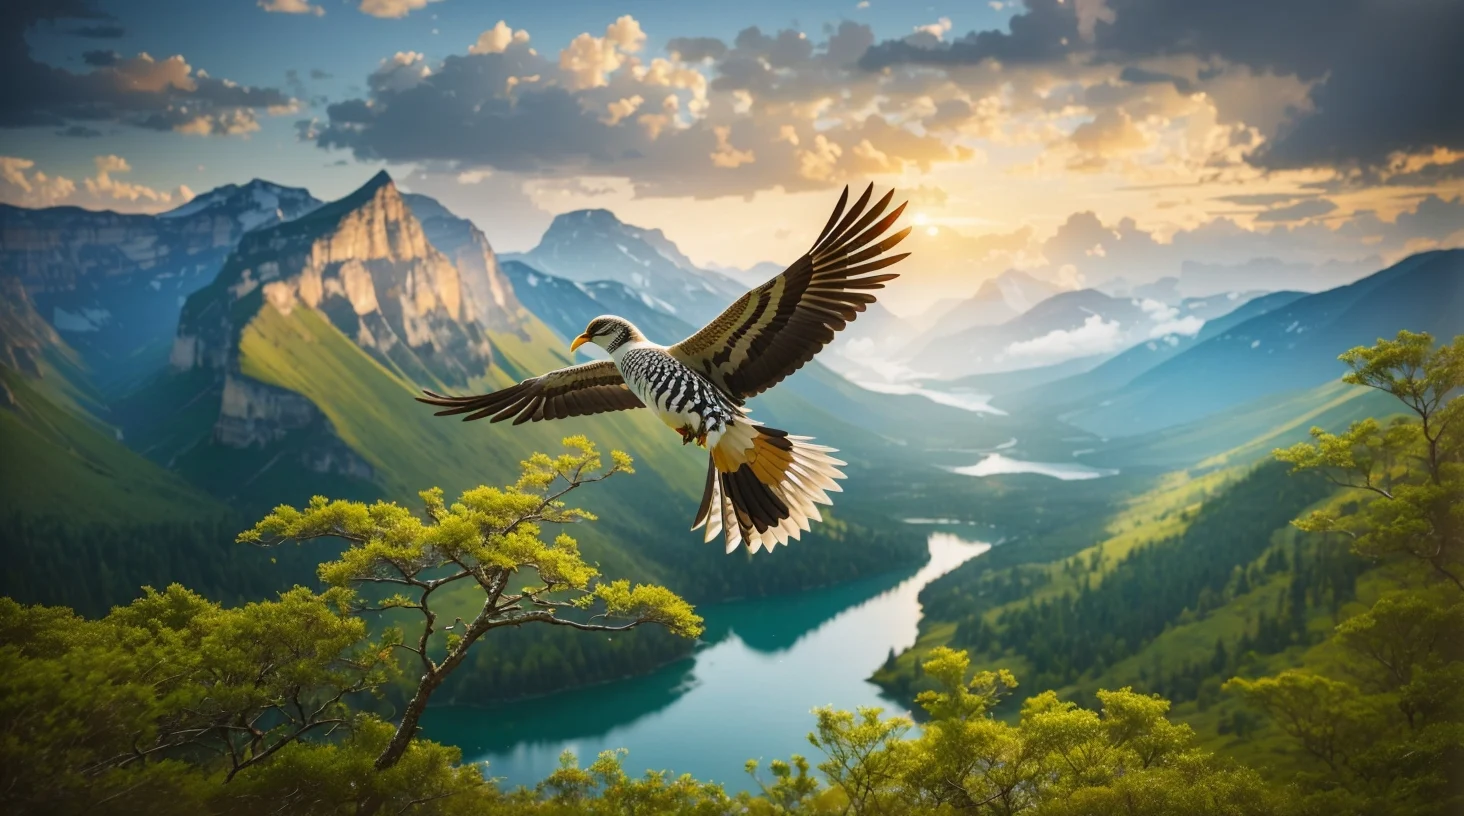 الحفاظ على الطيور والحياة البرية: دور الحدائق الوطنية